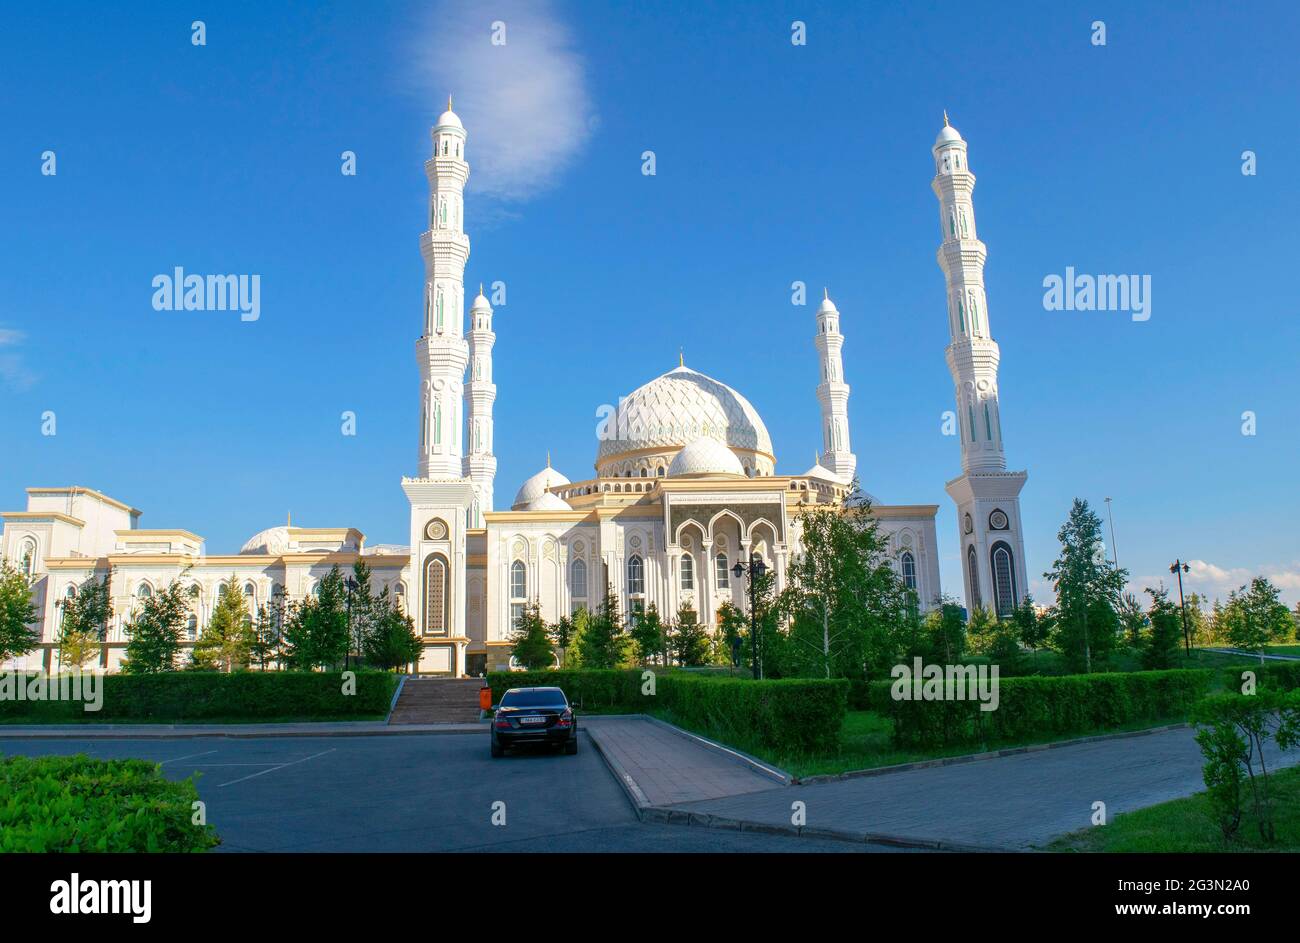 Mosquée Hazret Sultan pendant une journée sur fond de ciel bleu clair, heure d'été. Stationnement vide. Banque D'Images